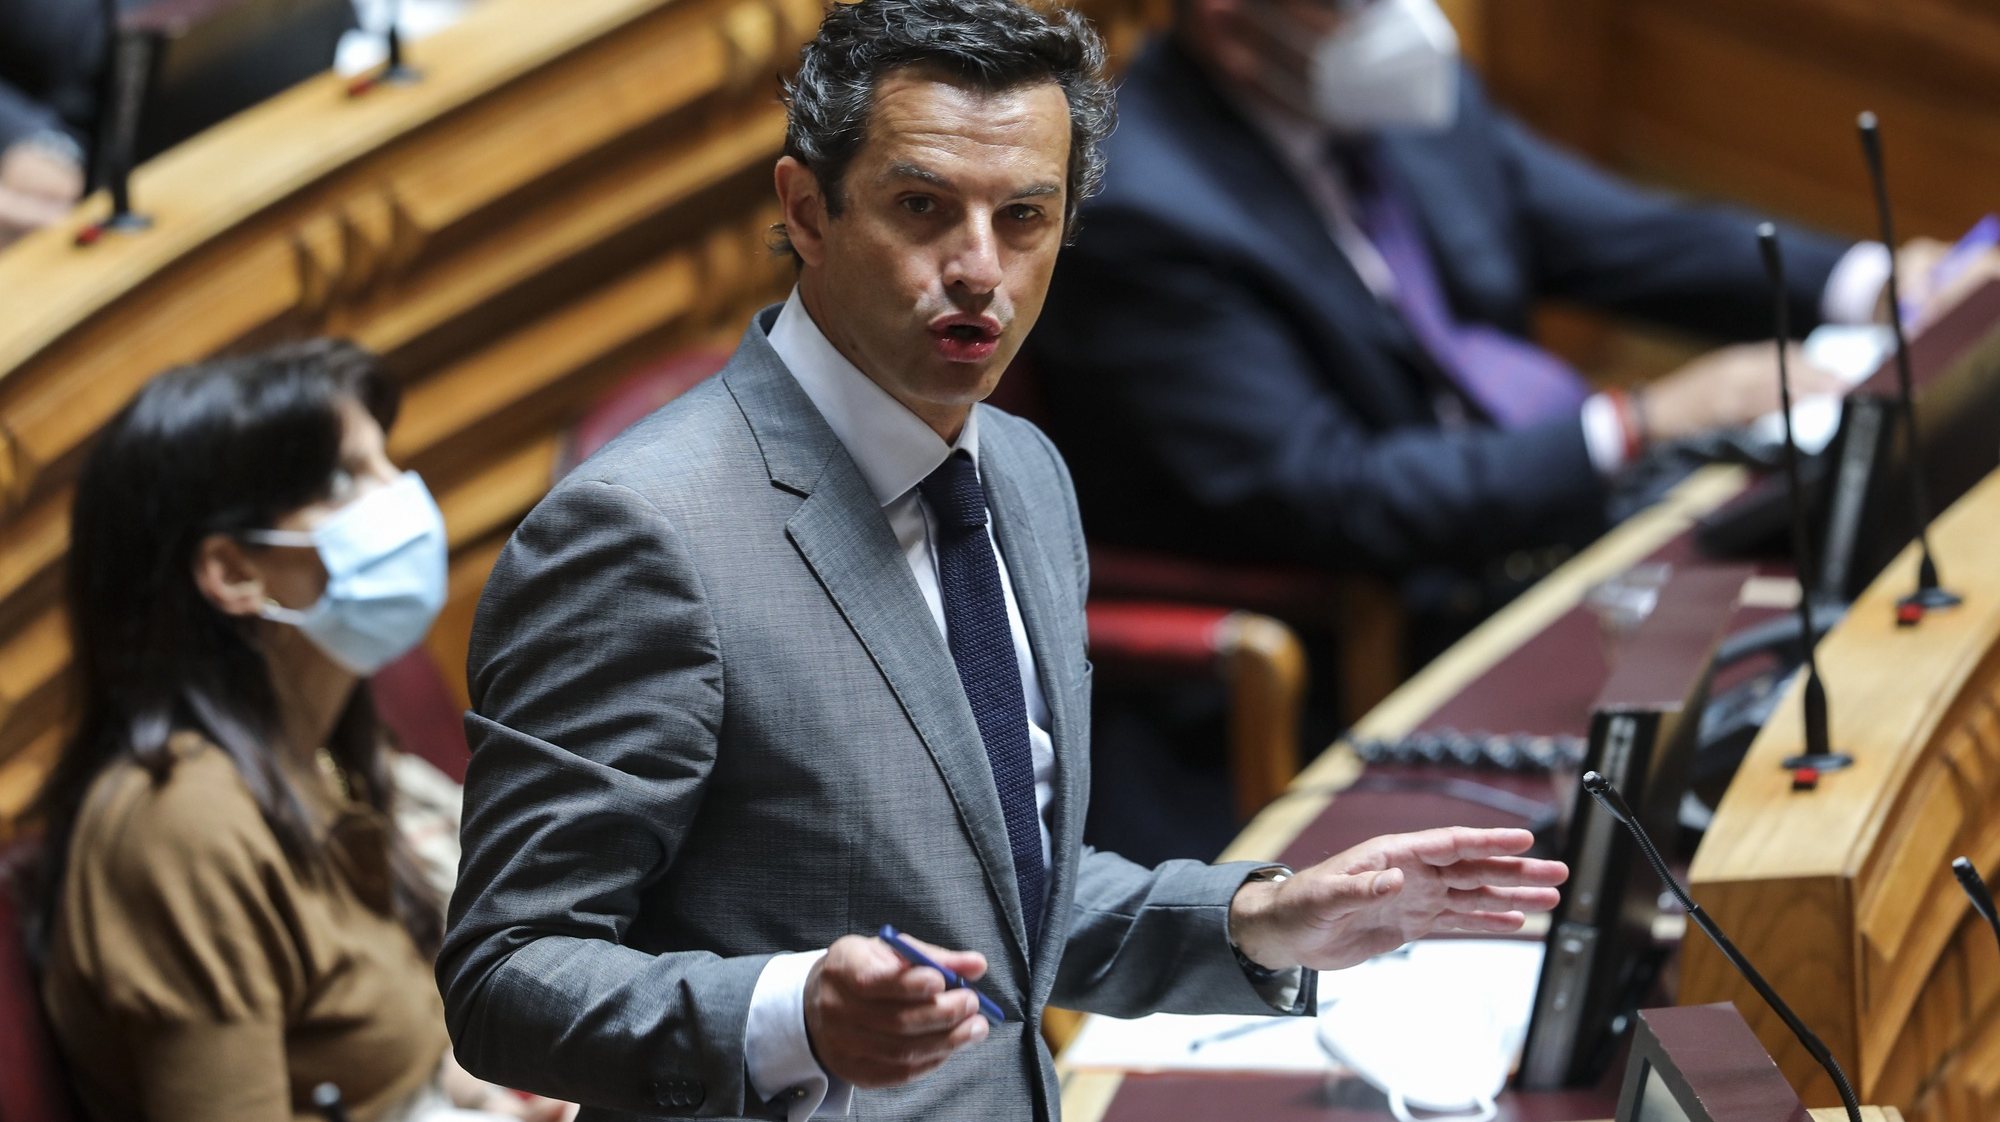 O deputado do PSD, Carlos Peixoto intervém no debate parlamentar, esta tarde na Assembleia da República em Lisboa, 23 de junho de 2021. MIGUEL A. LOPES/LUSA